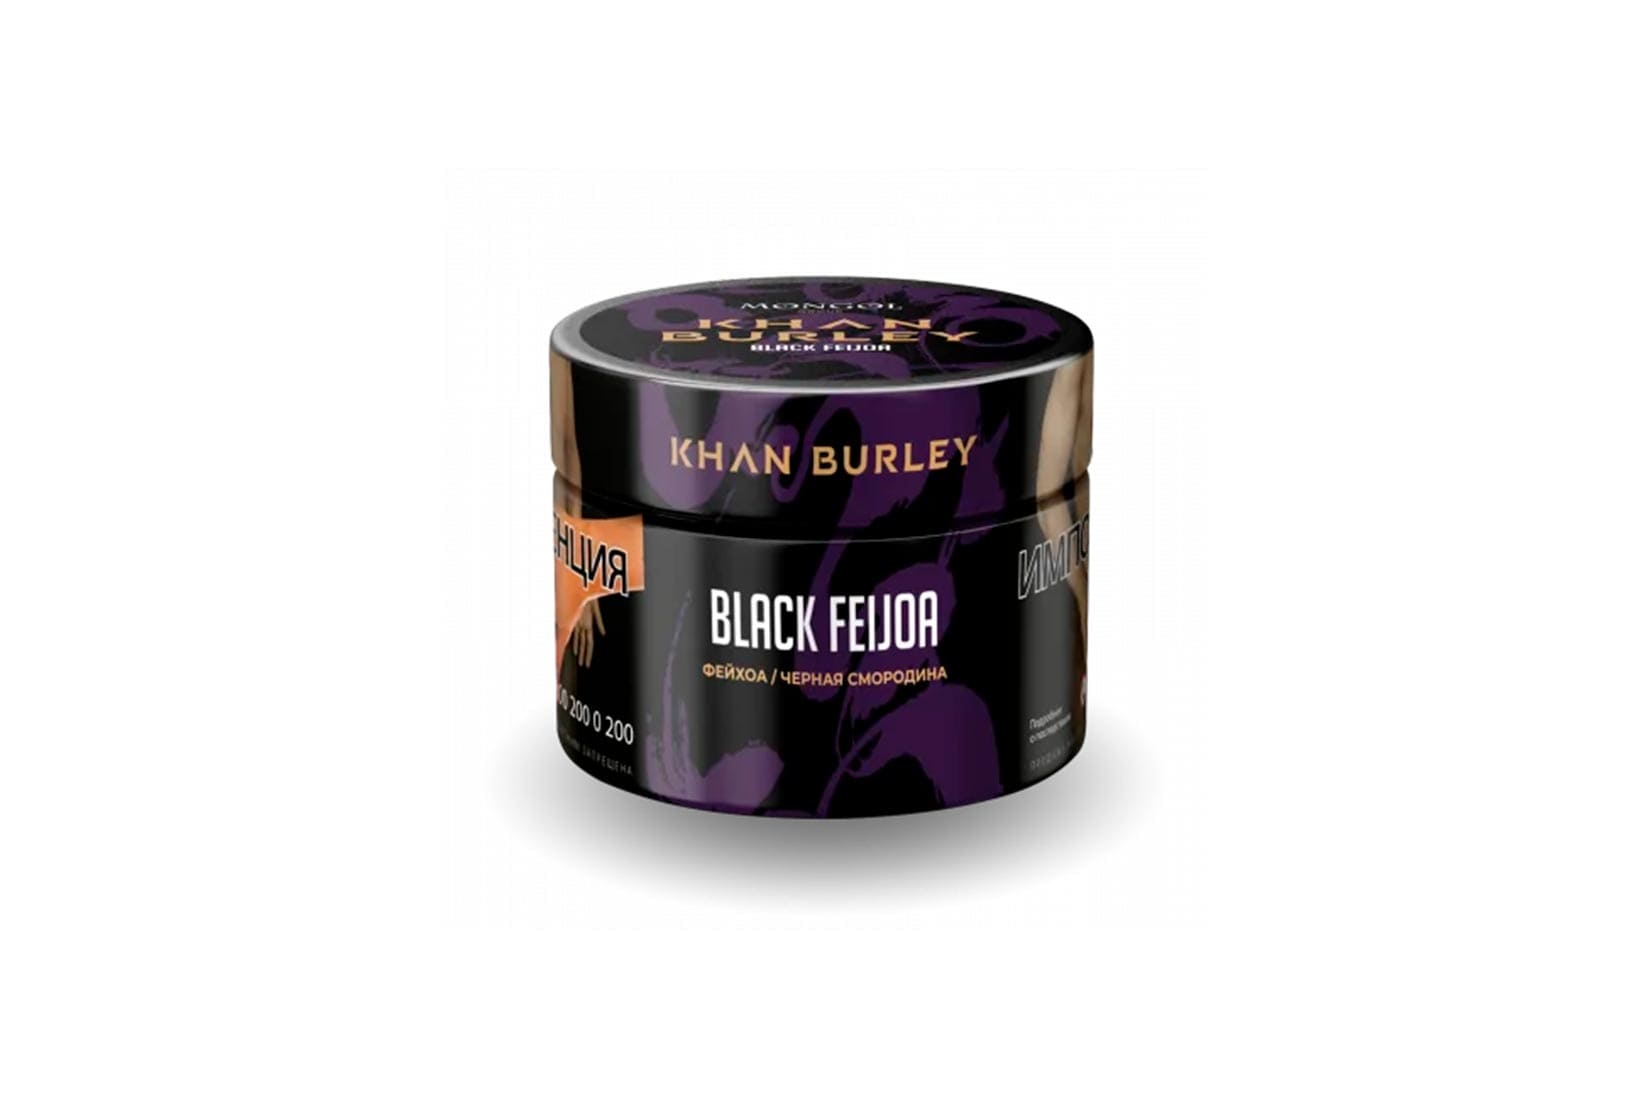 Табак для кальяна Khan Burley — Black feijoa (Фейхоа и черная смородина)